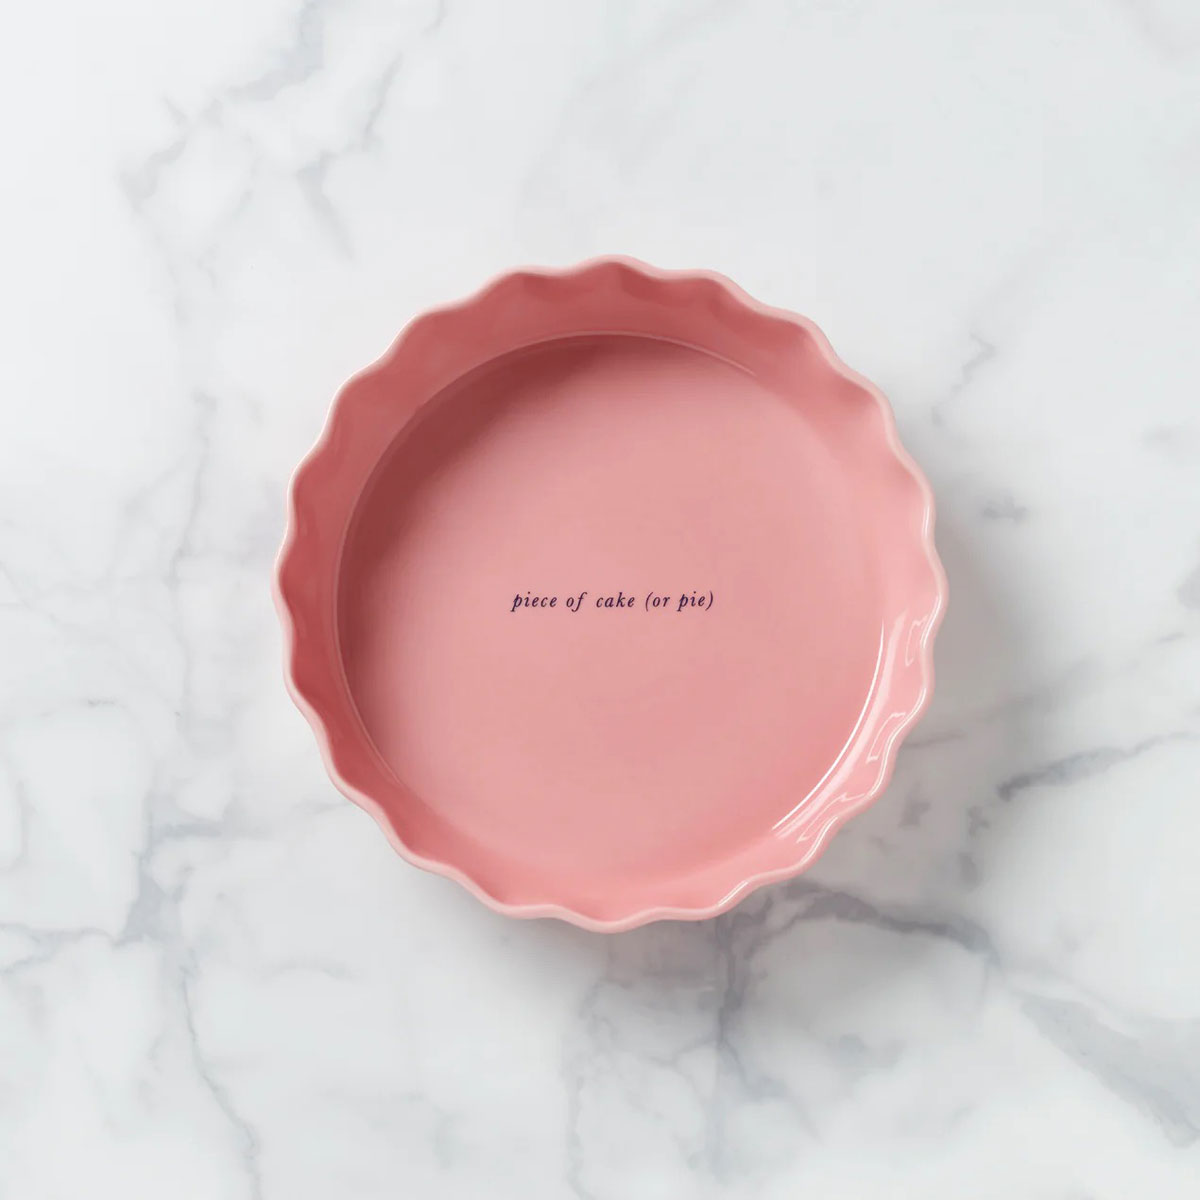 Kate Spade, Lenox China Make It Pop "Piece of Cake or Pie?" 11" Round Baking Dish Pink